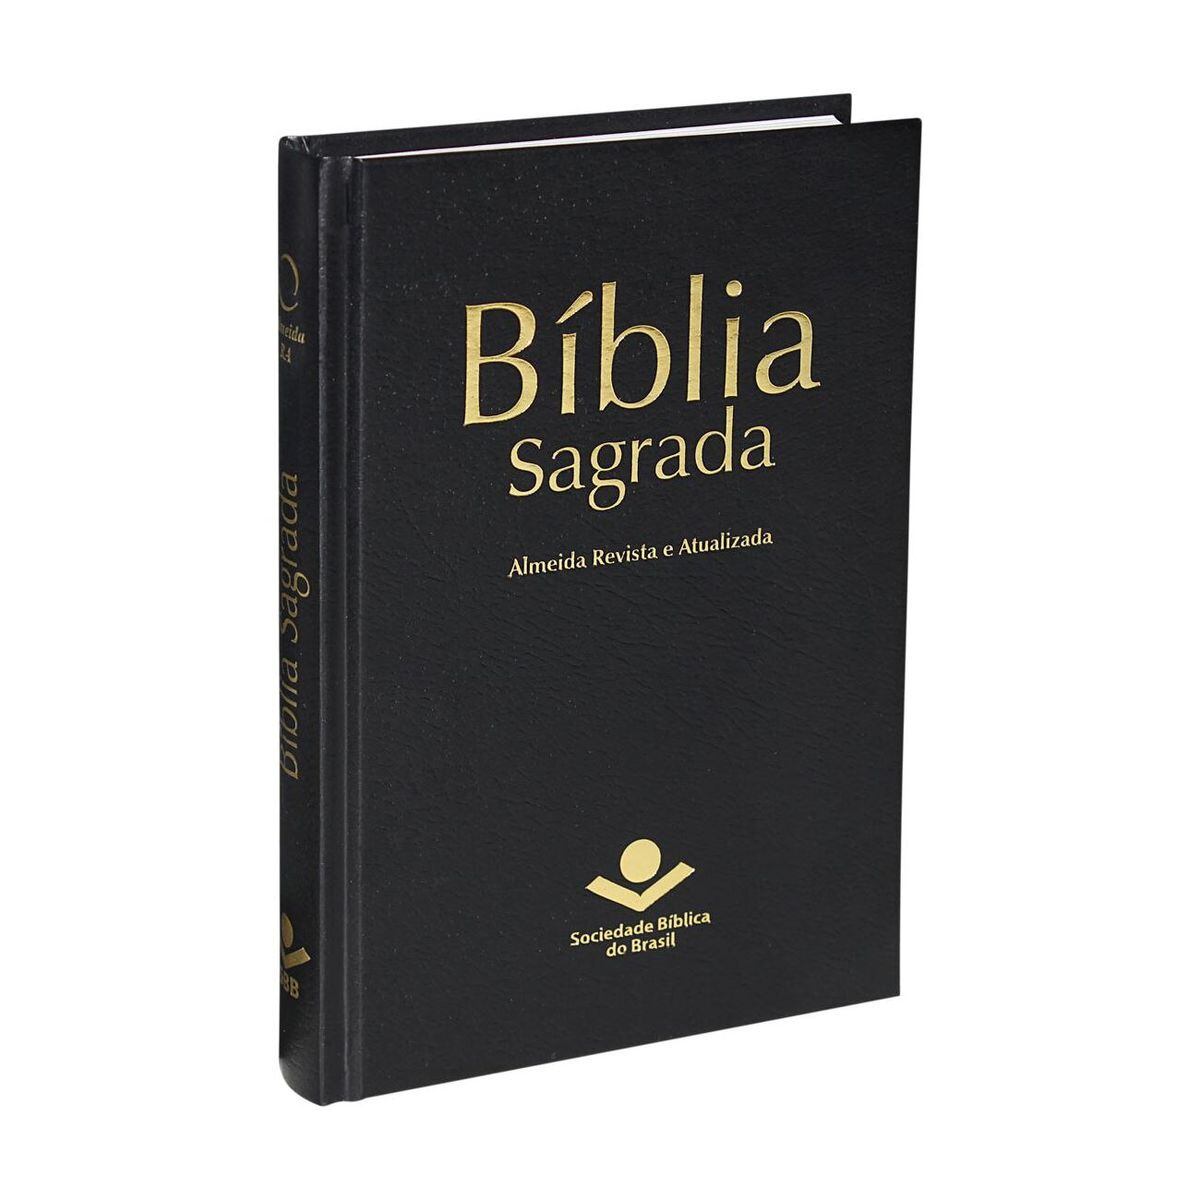 Abnb 216 by Sociedade Bíblica do Brasil - Issuu